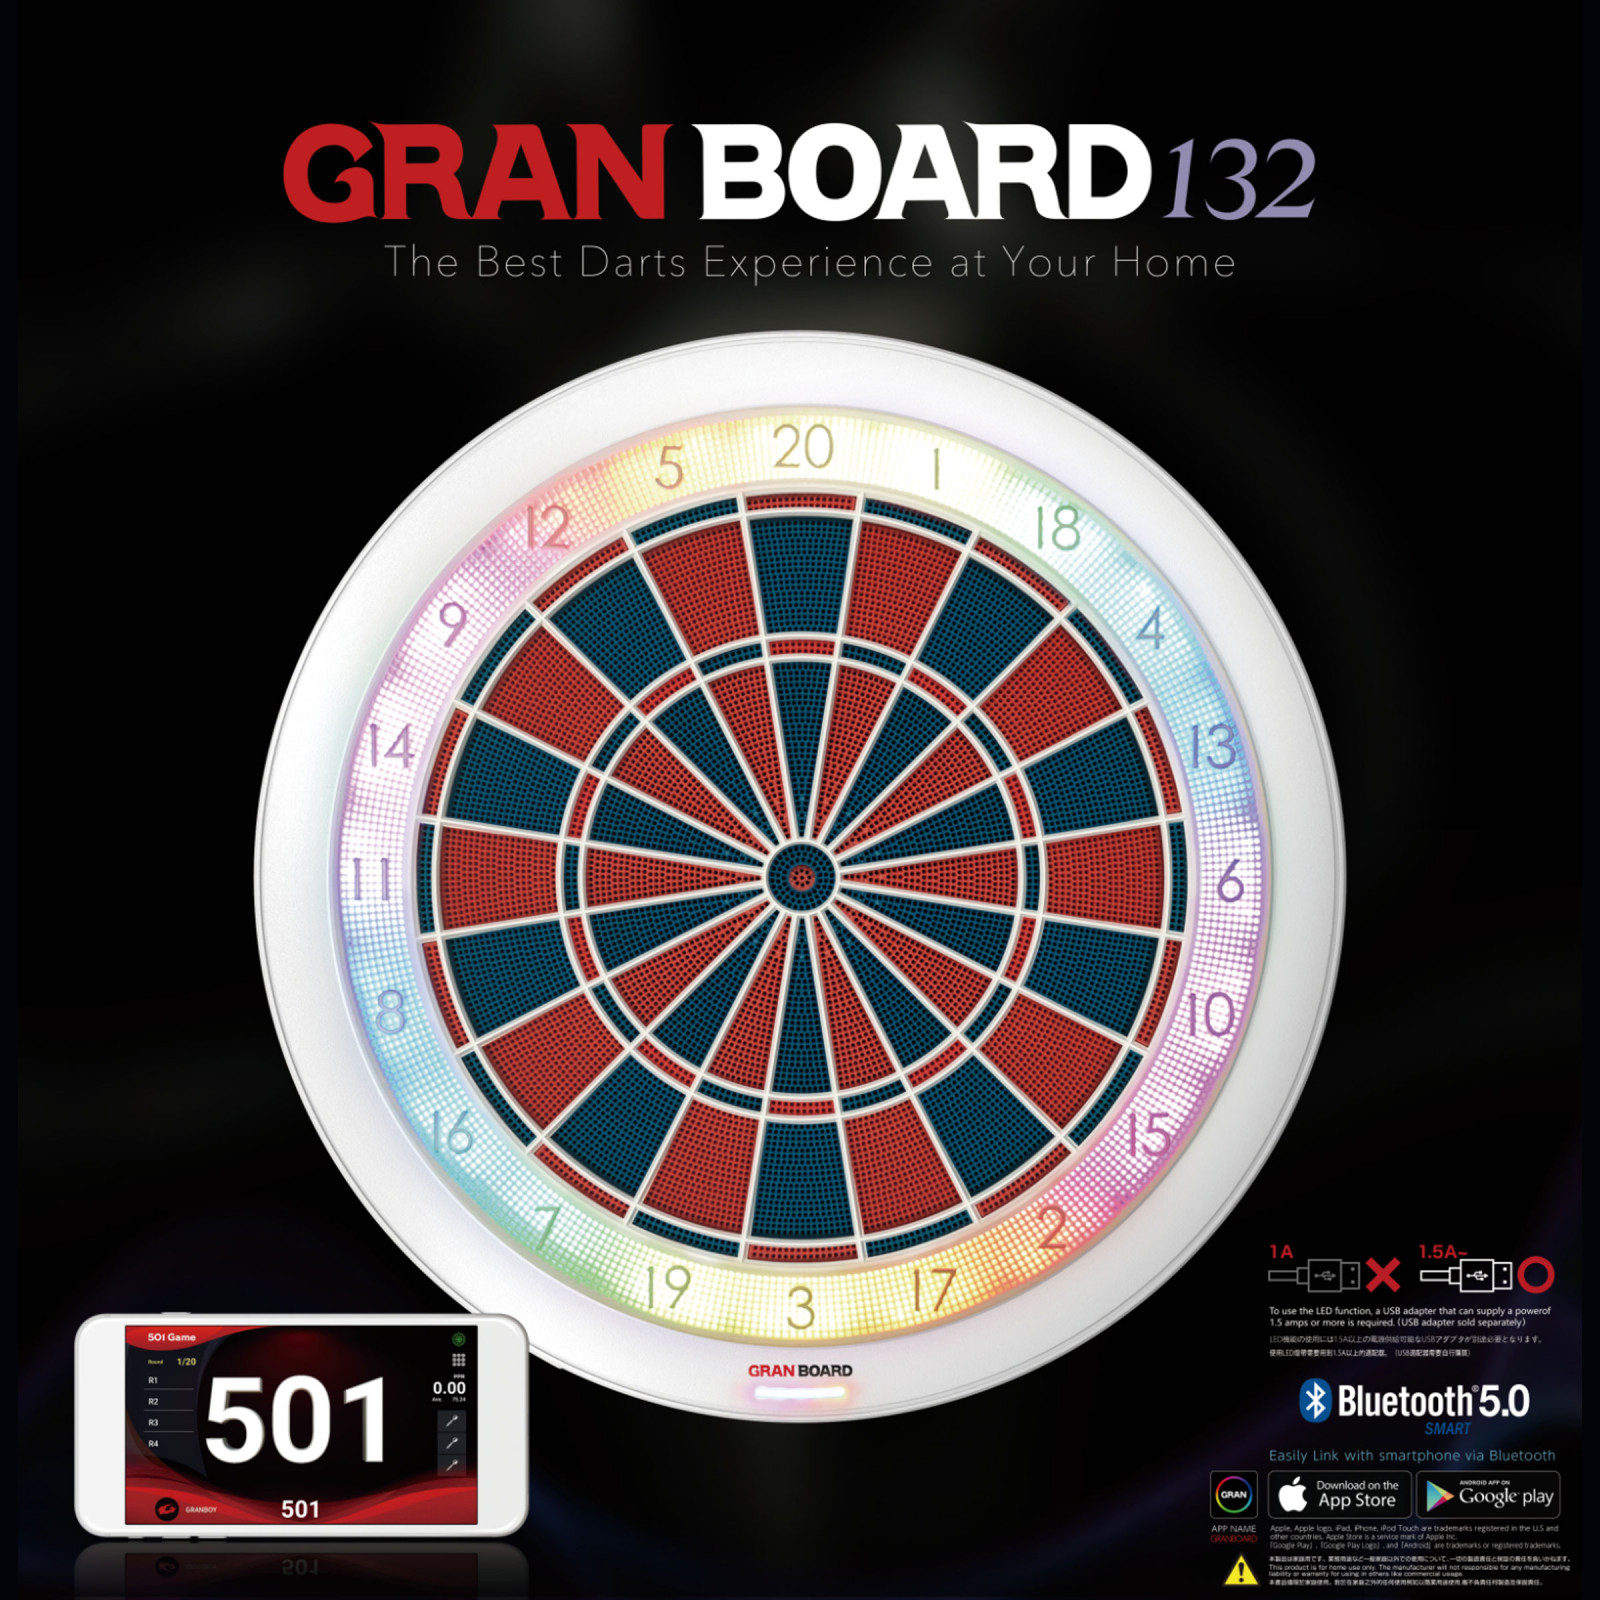 Granboard132